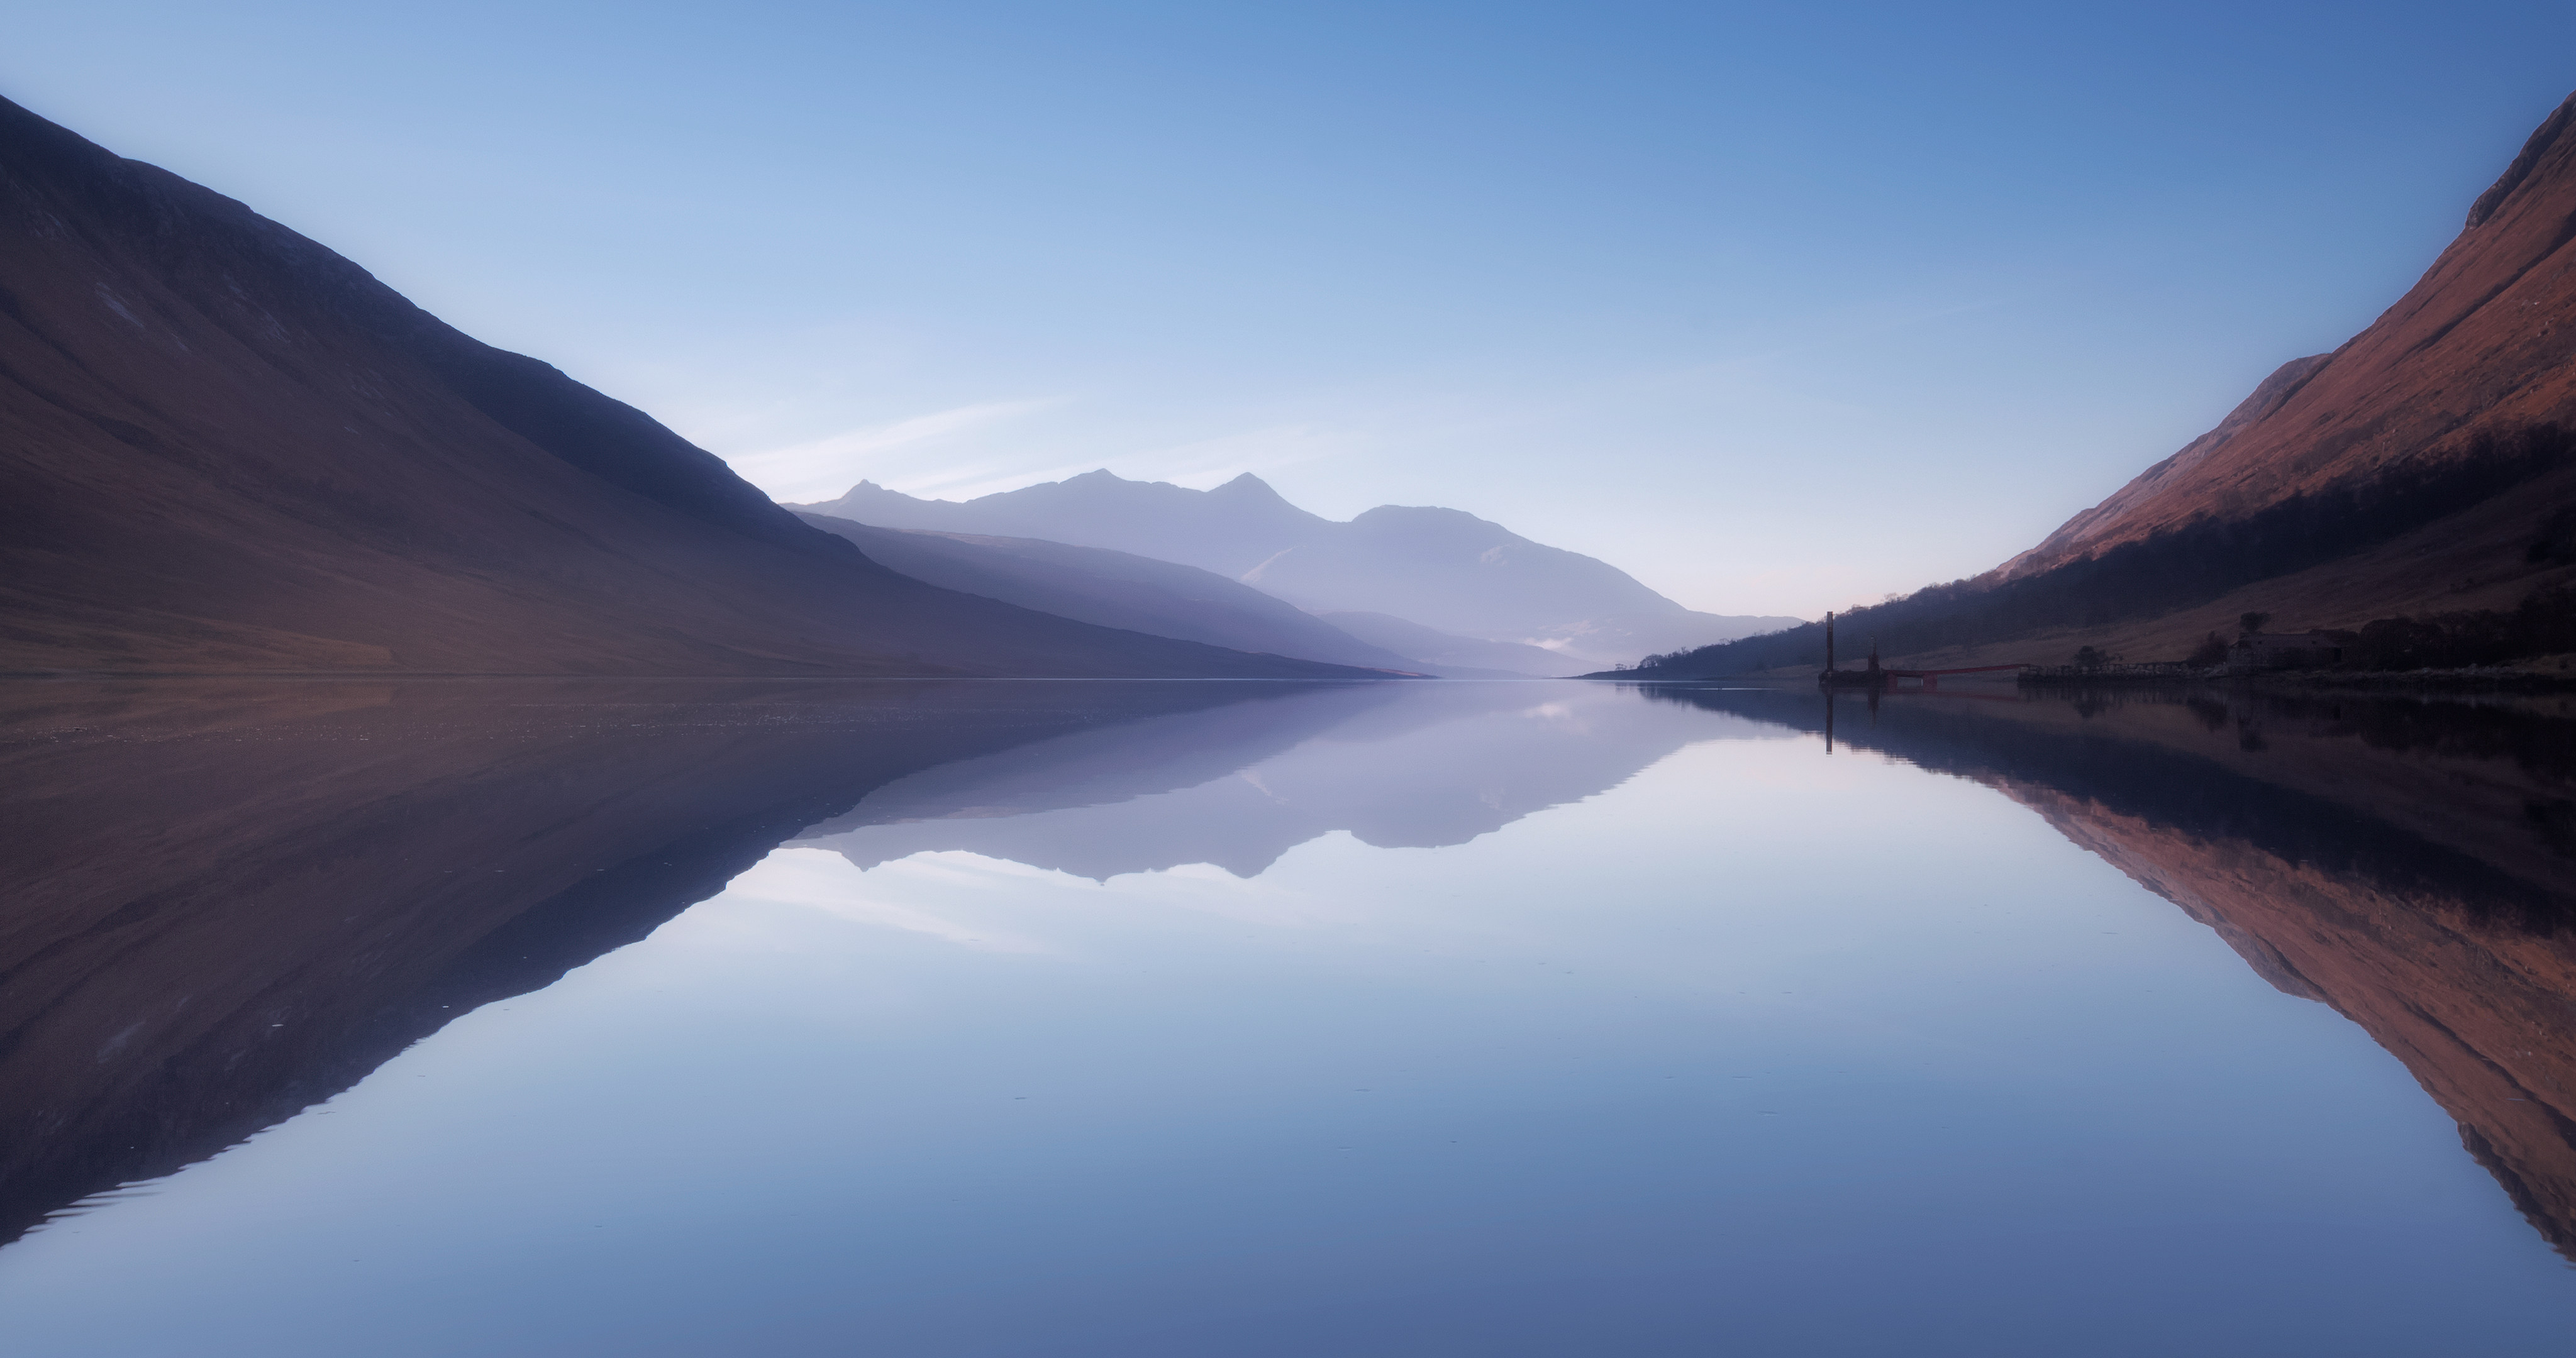 大雾天气中的镜湖孤舟唯美风景壁纸图片